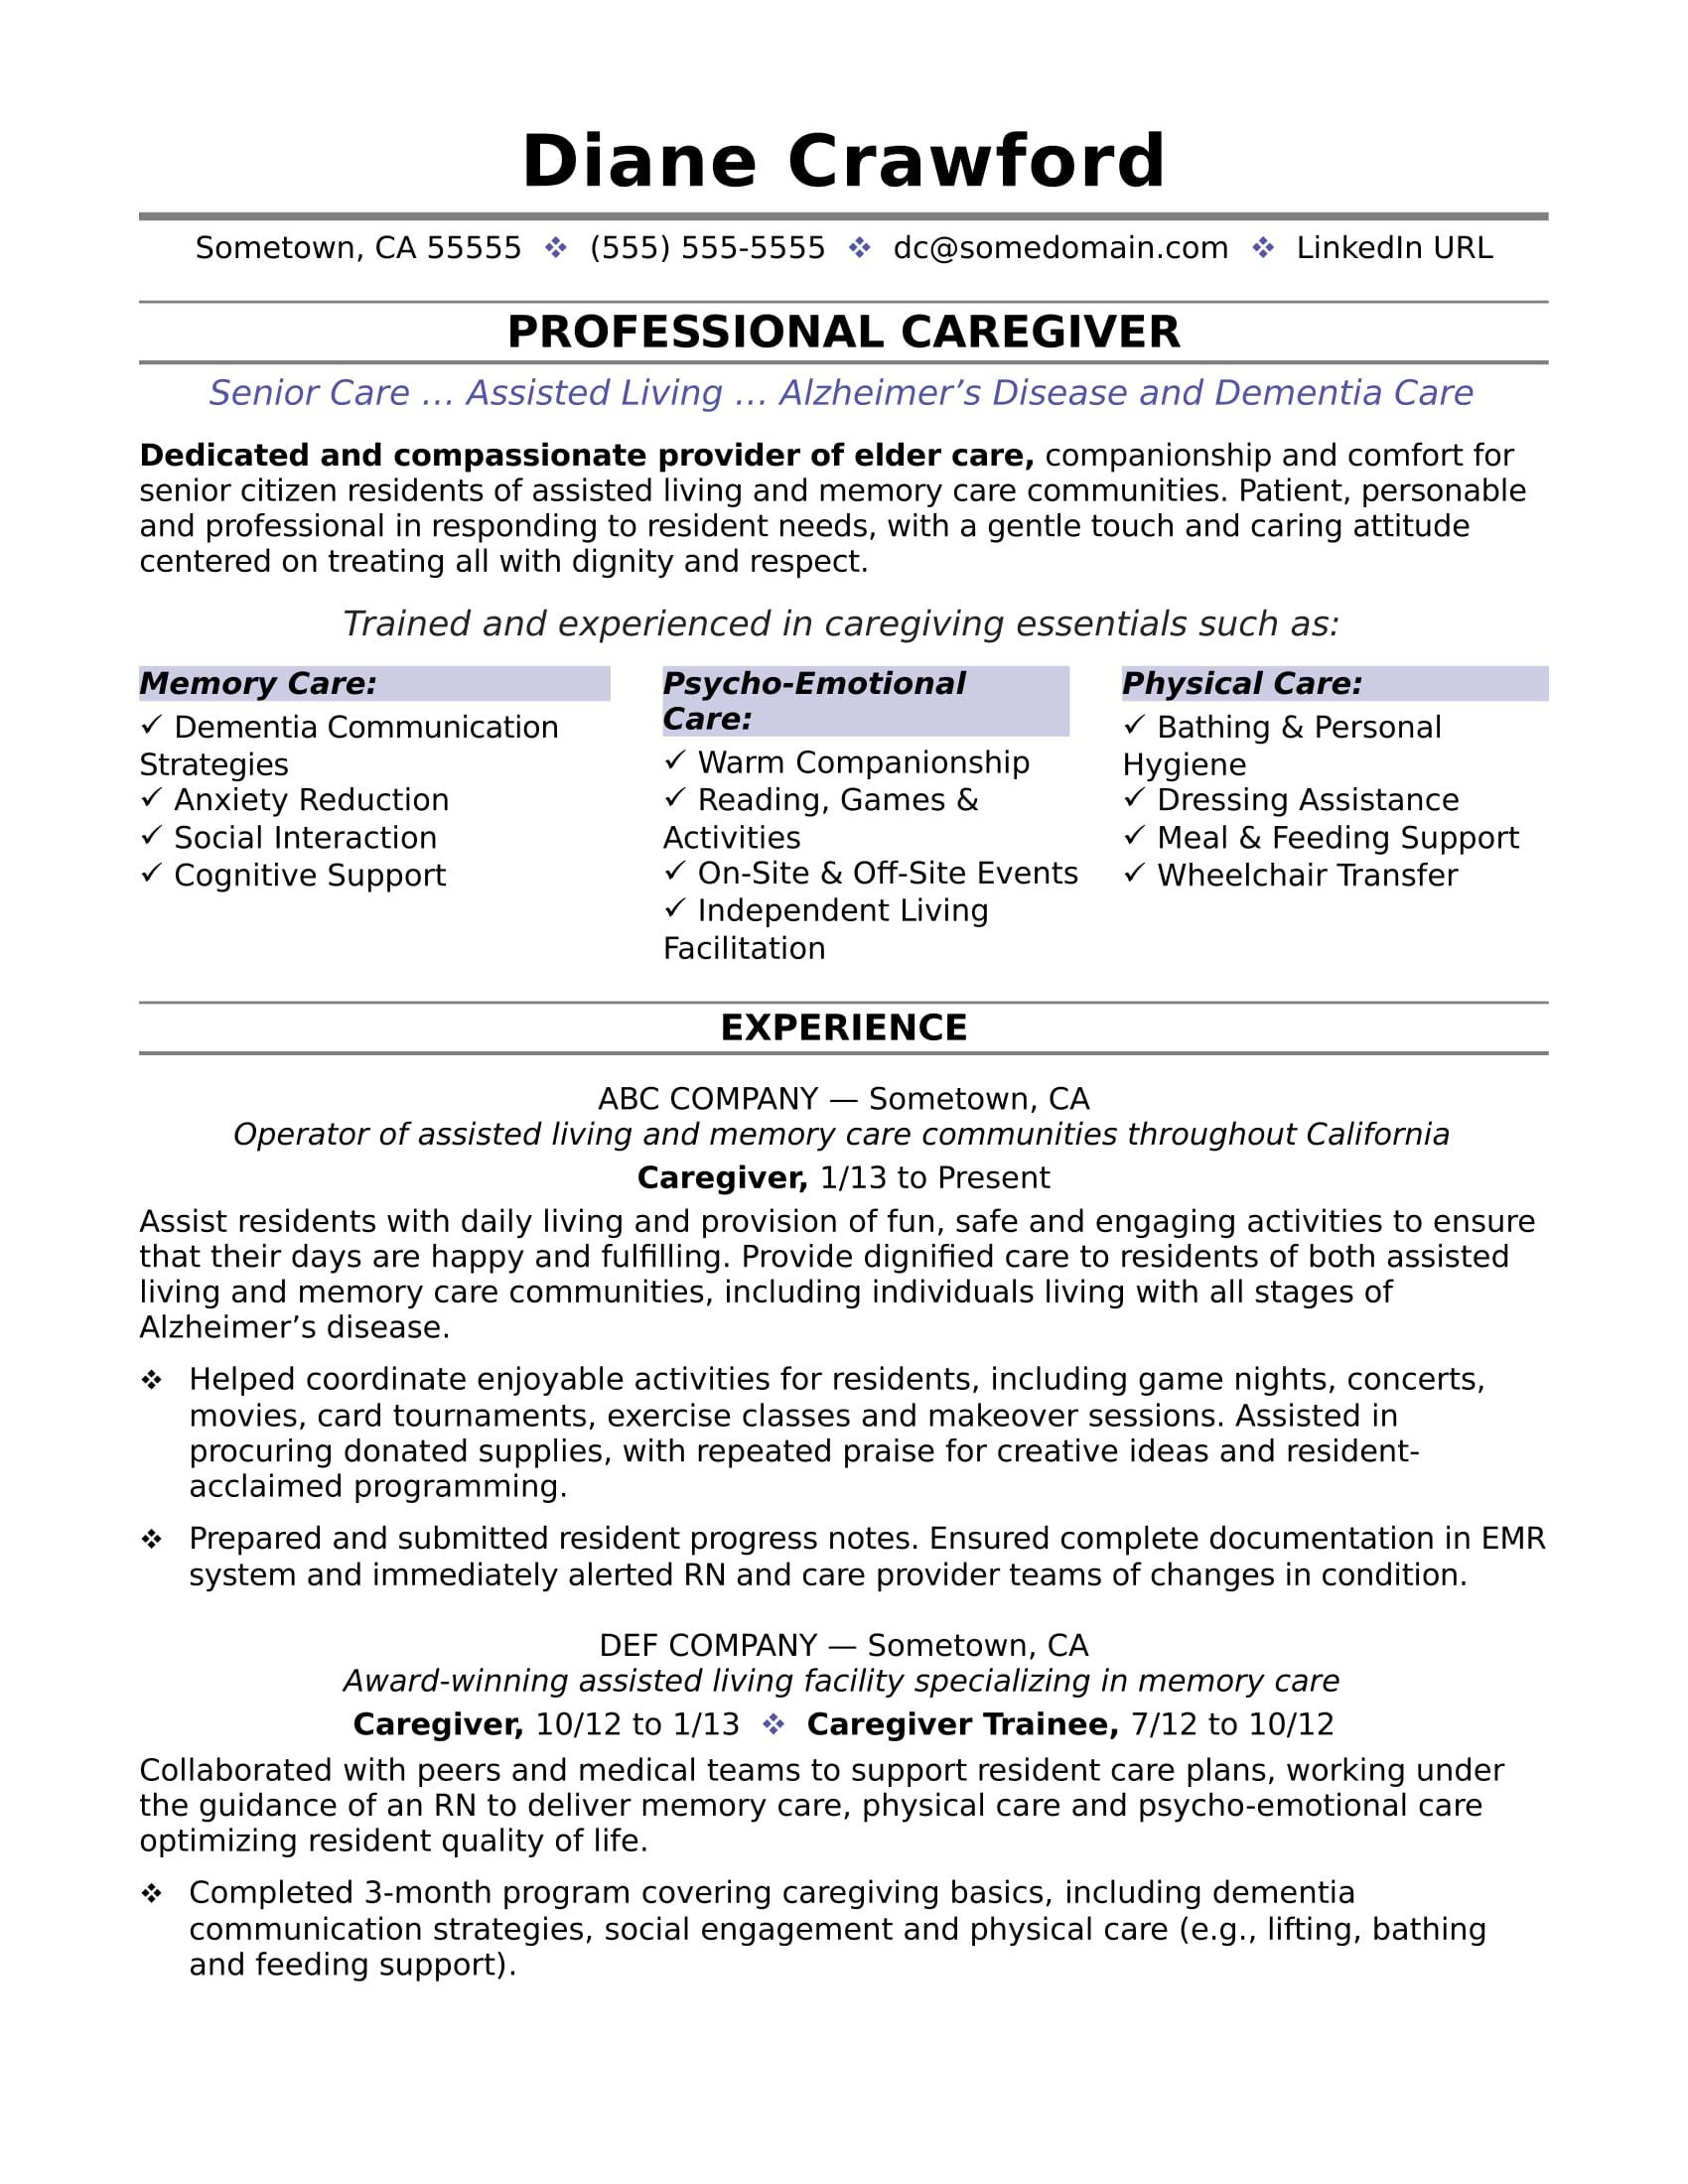 Sample Resume for Caregiver Position Elderly Caregiver Resume Sample Monster.com